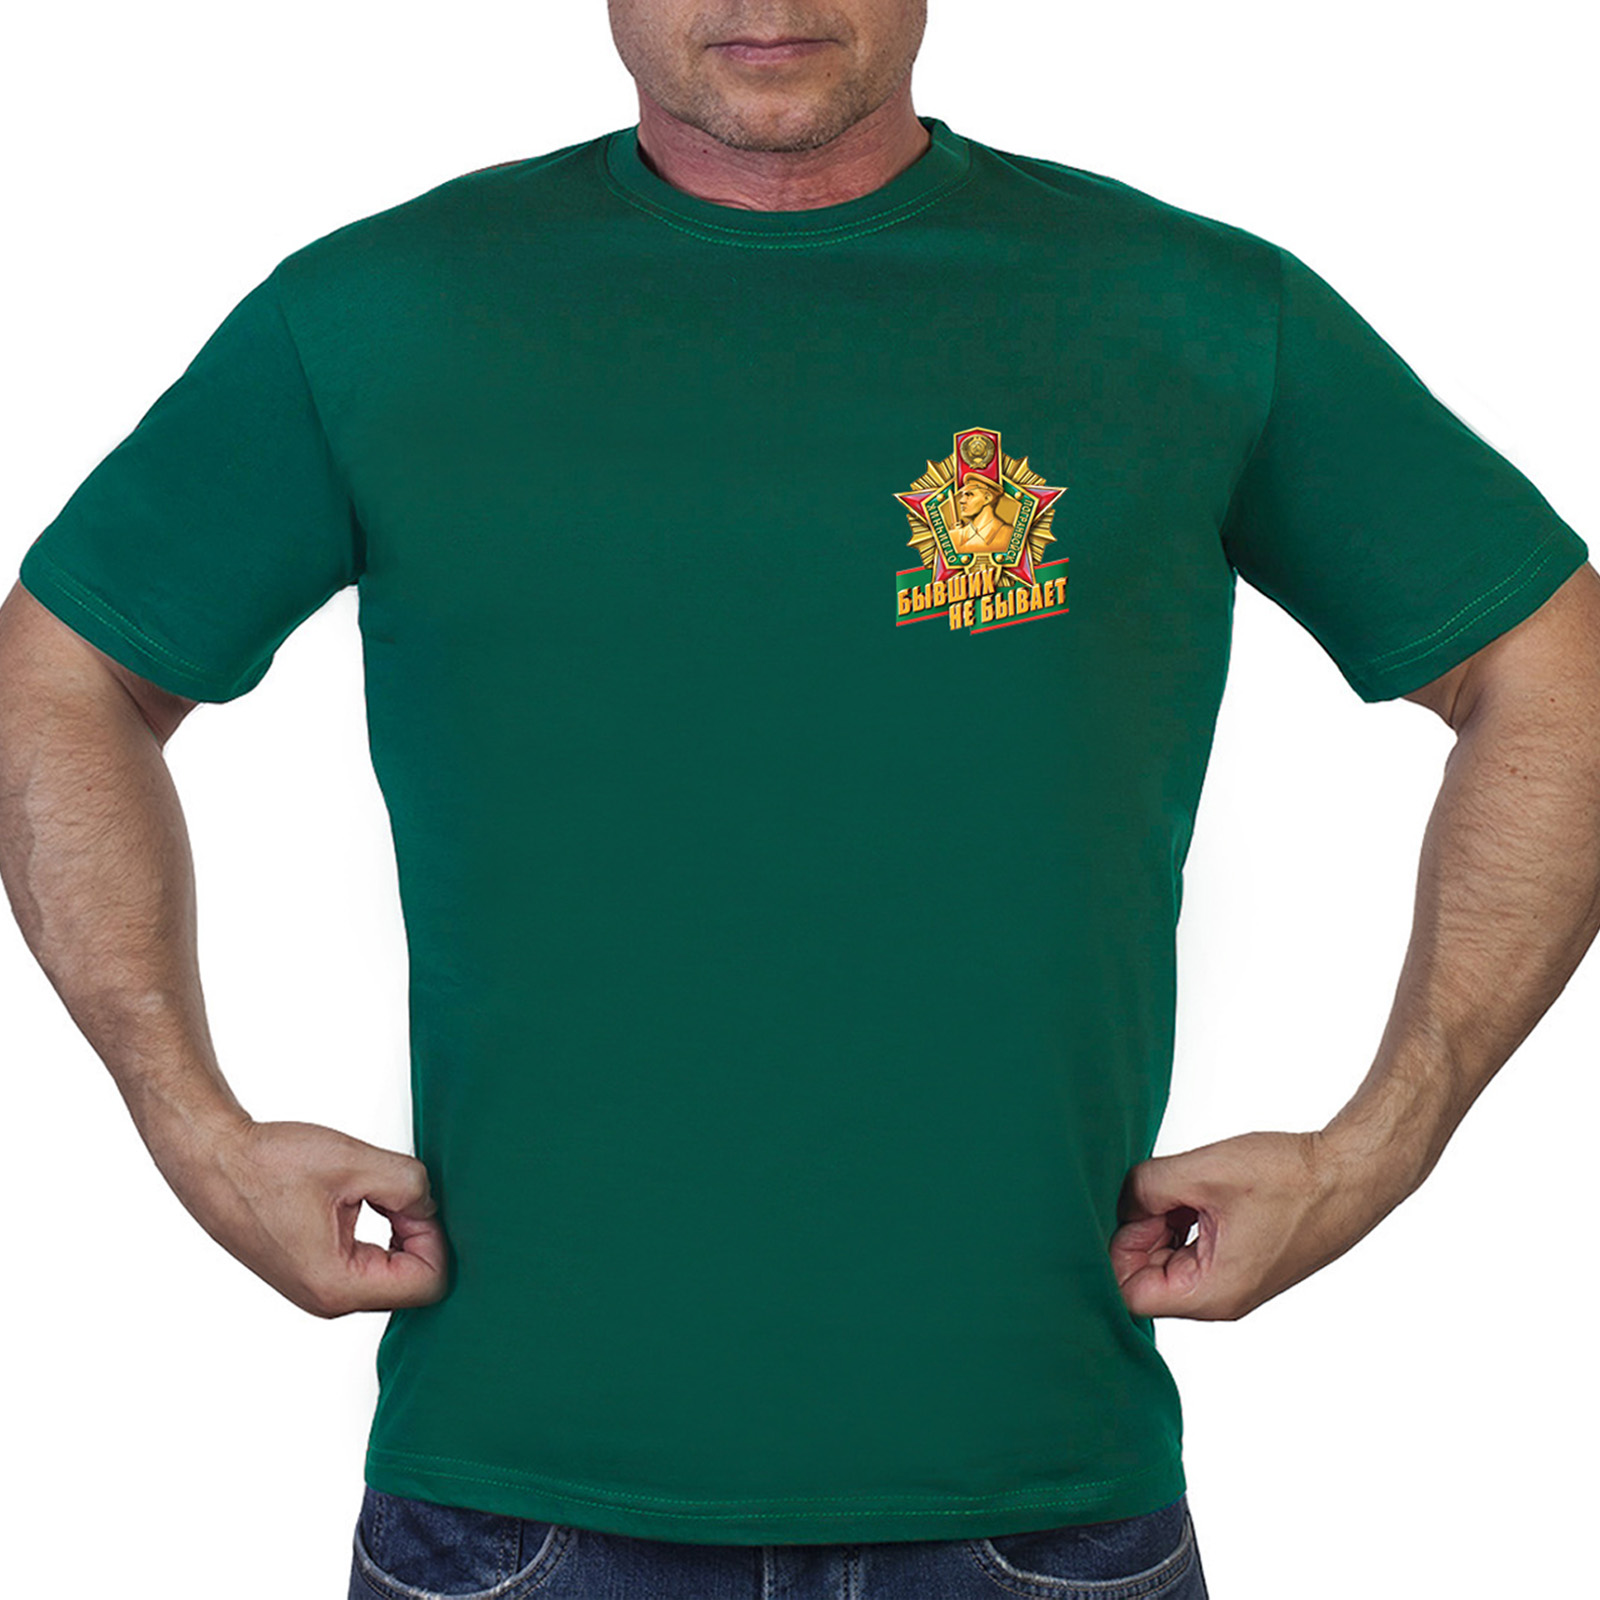 Мужская зелёная футболка с термотрансфером "Бывших пограничников не бывает" - в розницу и оптом